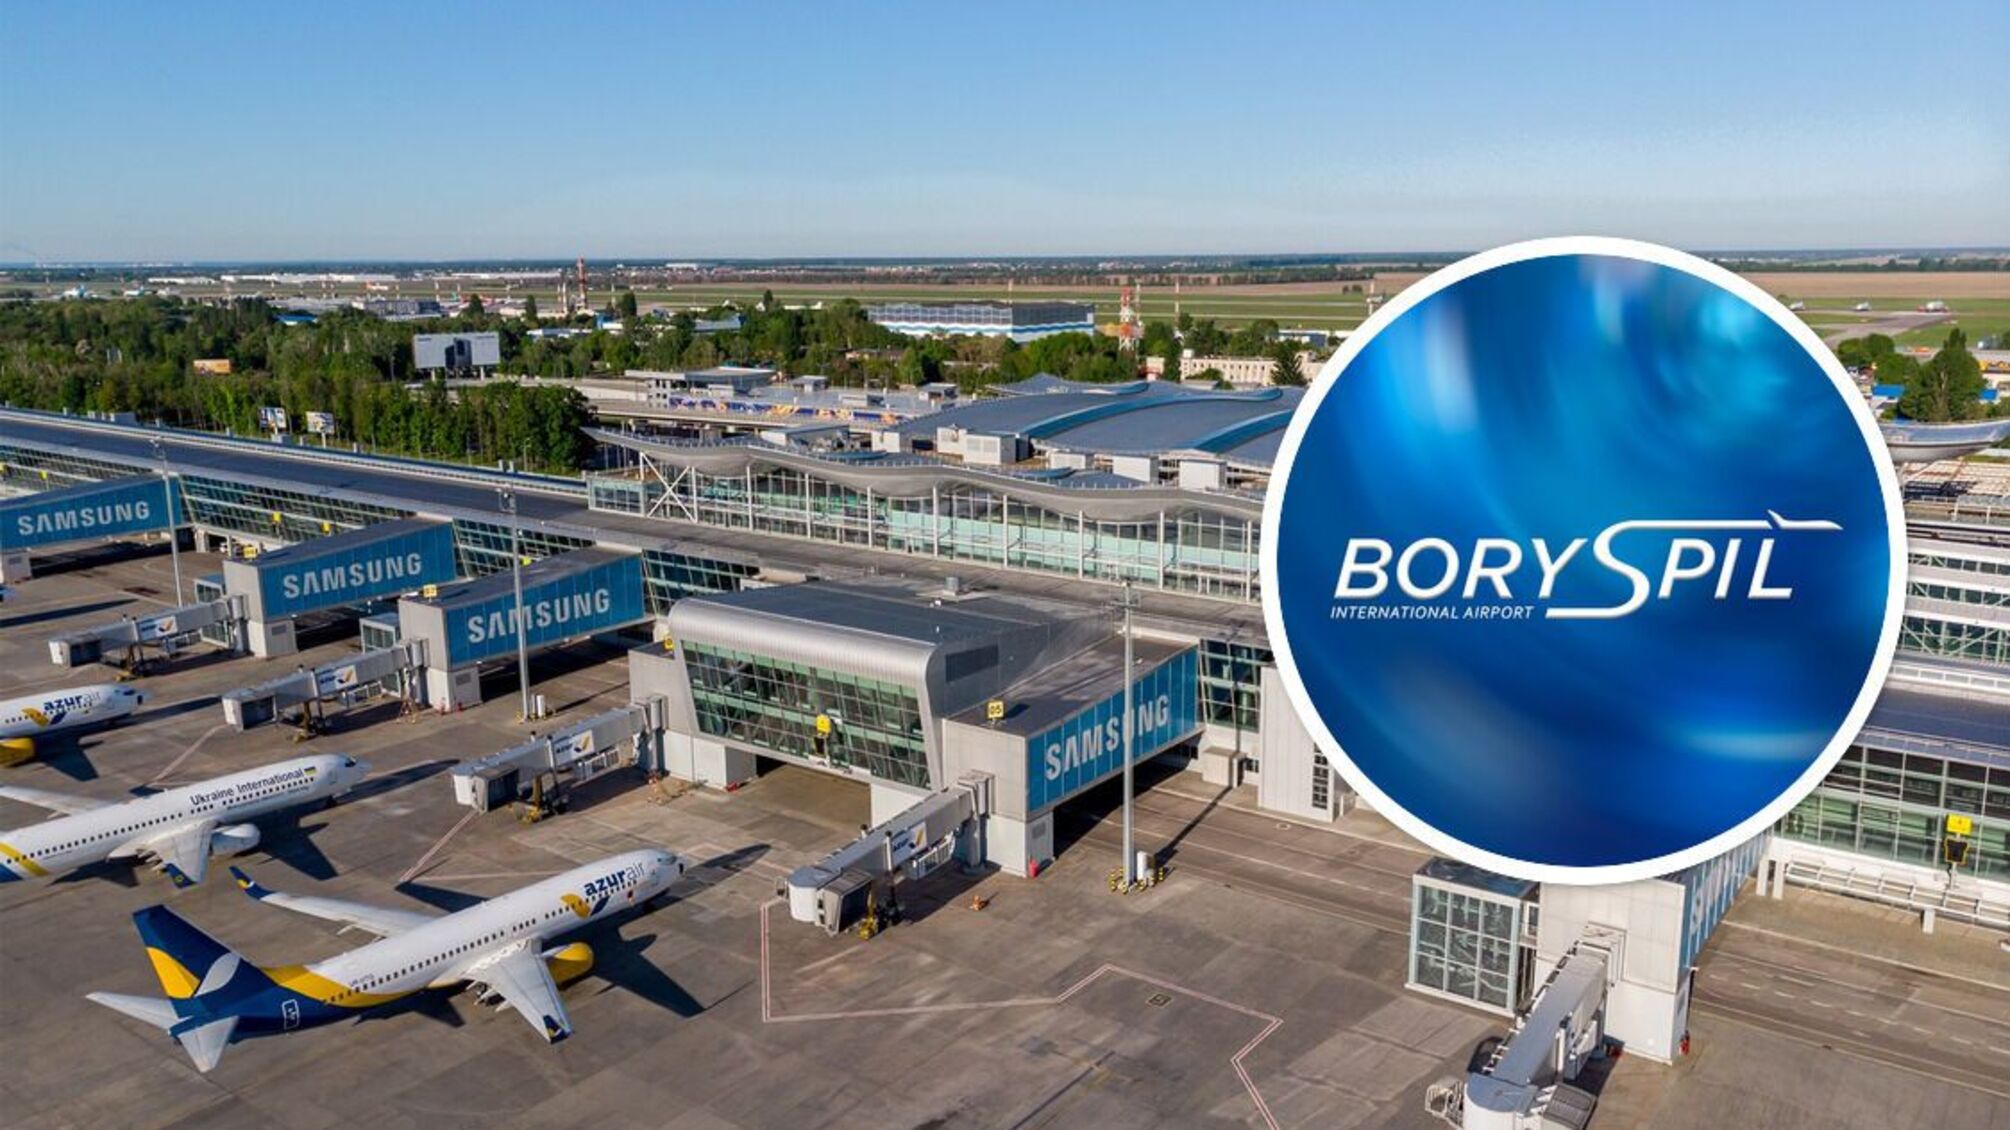 Аэропорт 'Борисполь' готовится к возобновлению работы: когда планируют запускать рейсы?